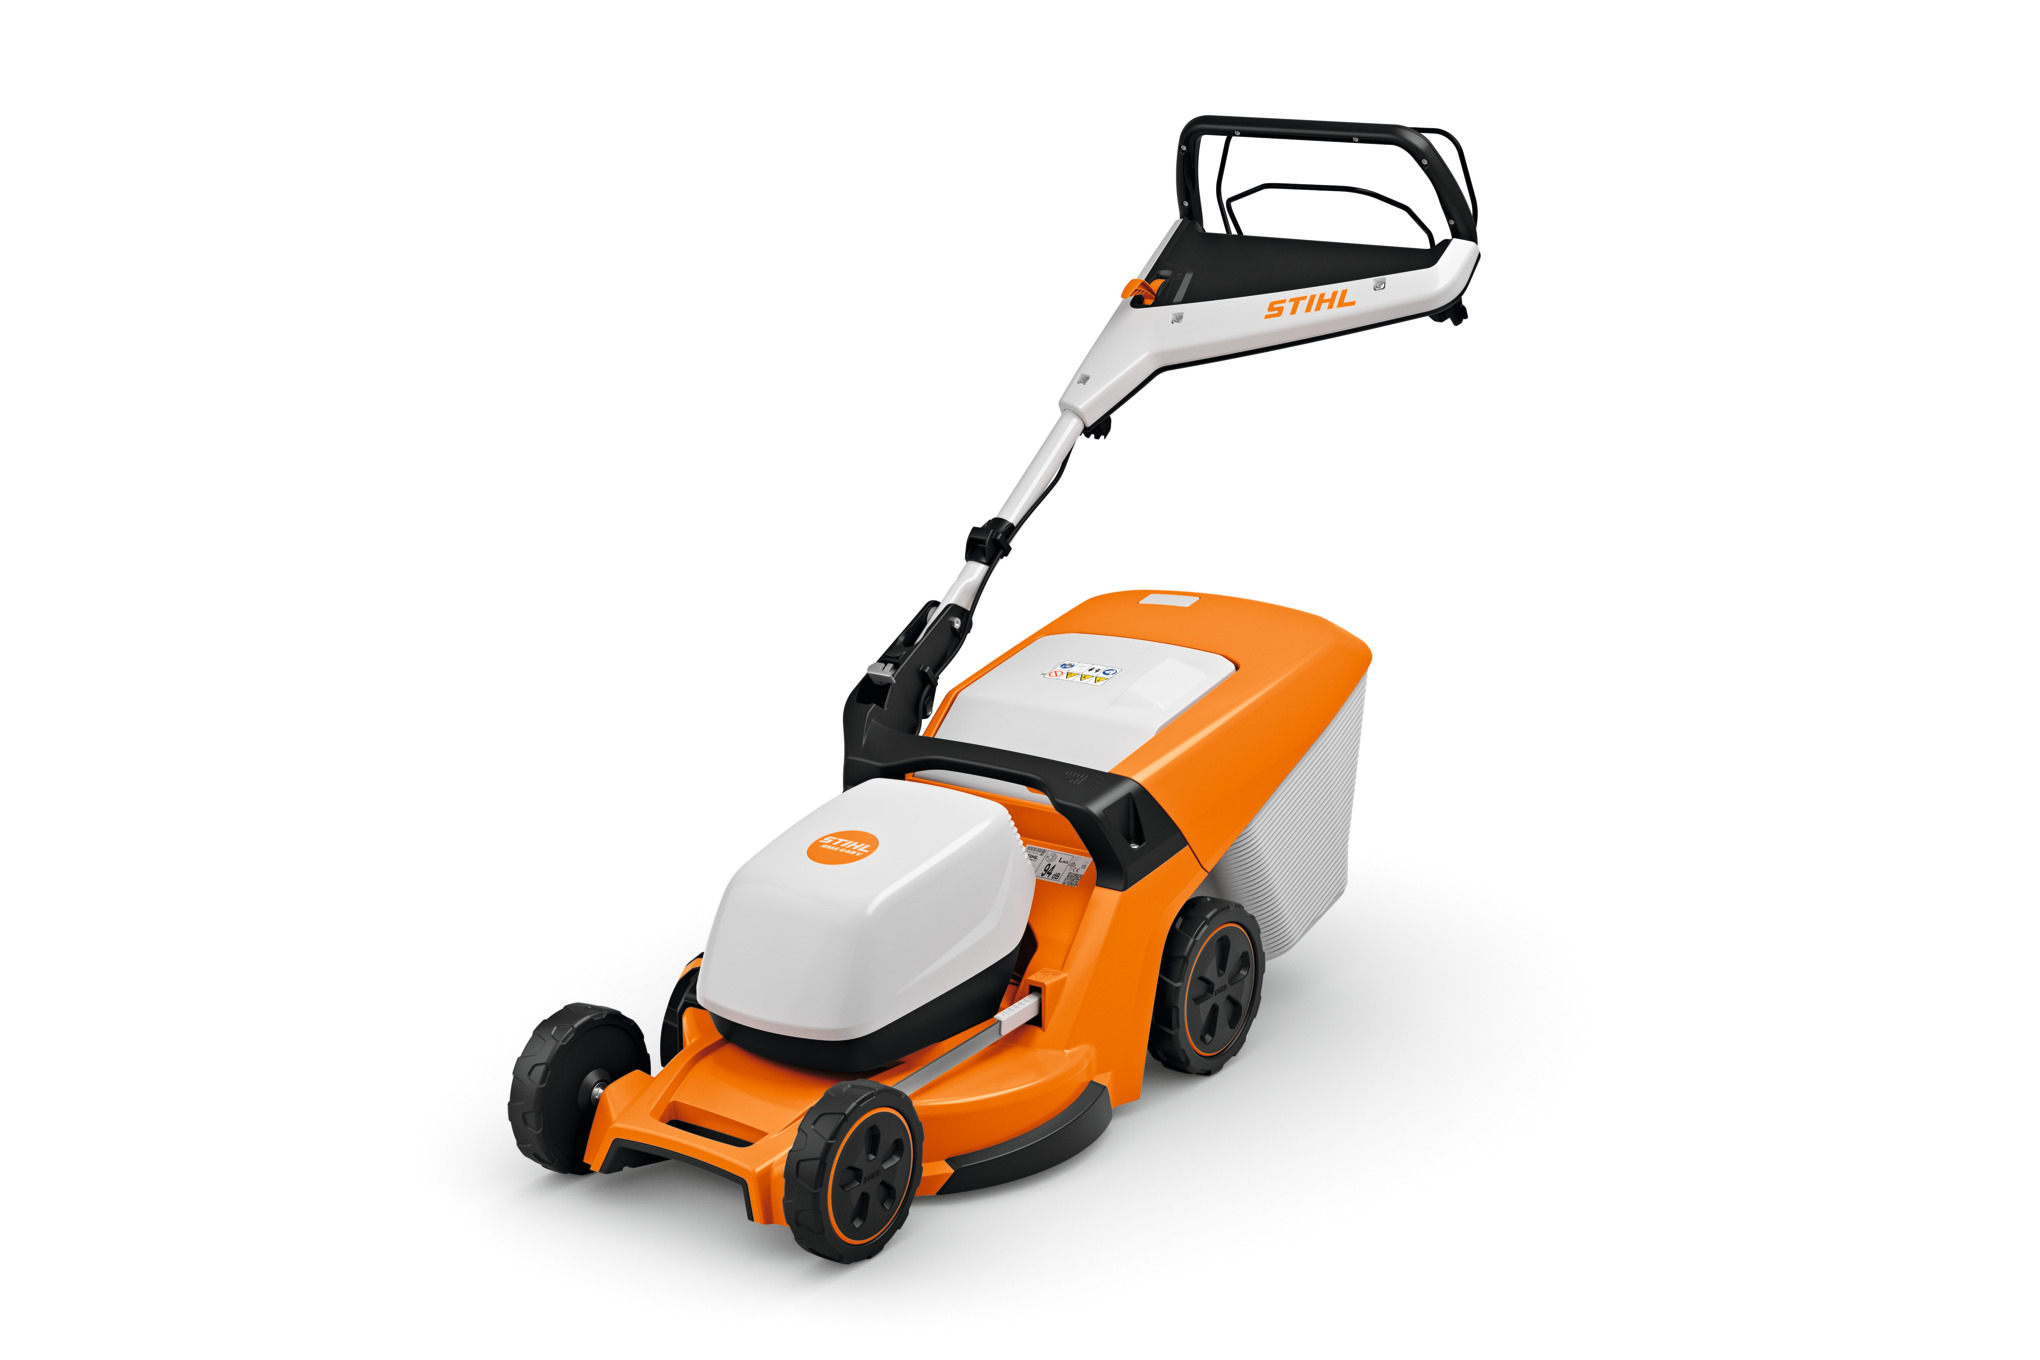 RMA 448 V Cordless Lawn Mower